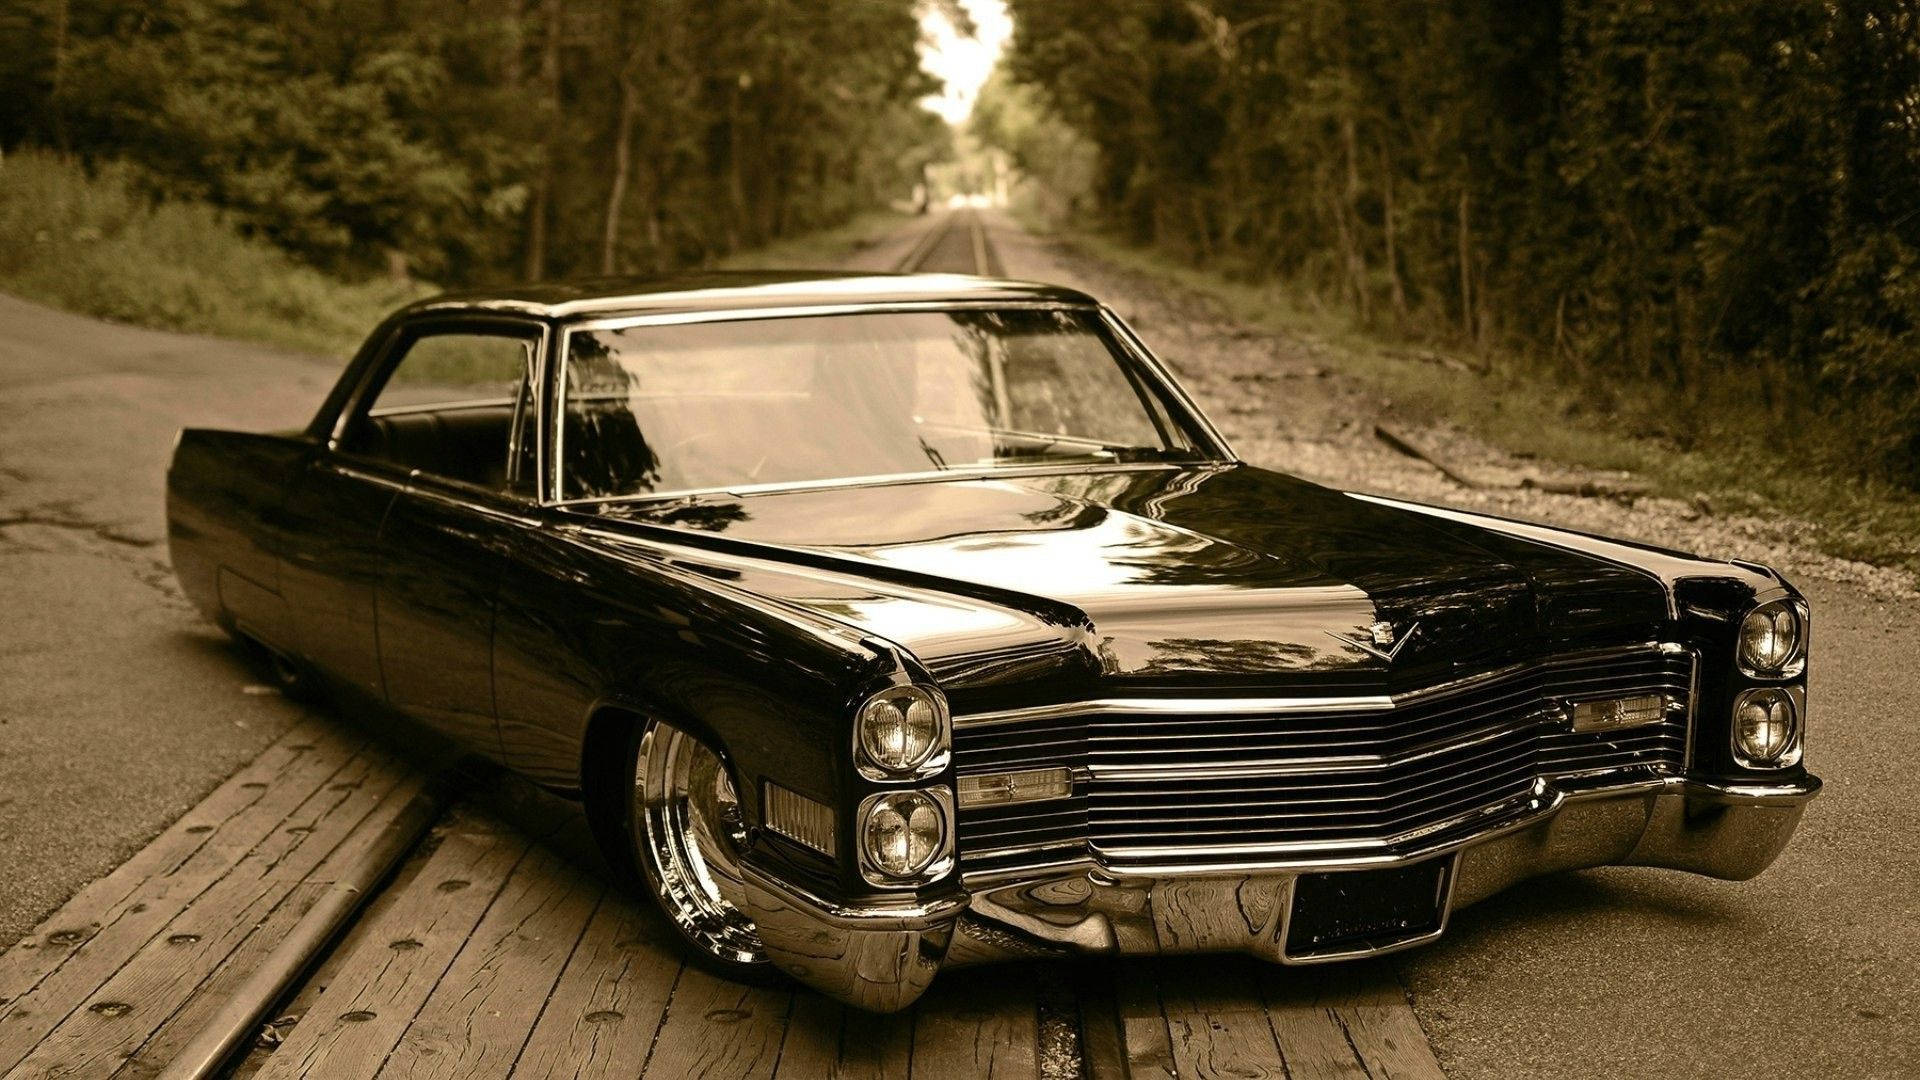 Lowered Vintage Cadillac El Dorado Wallpaper